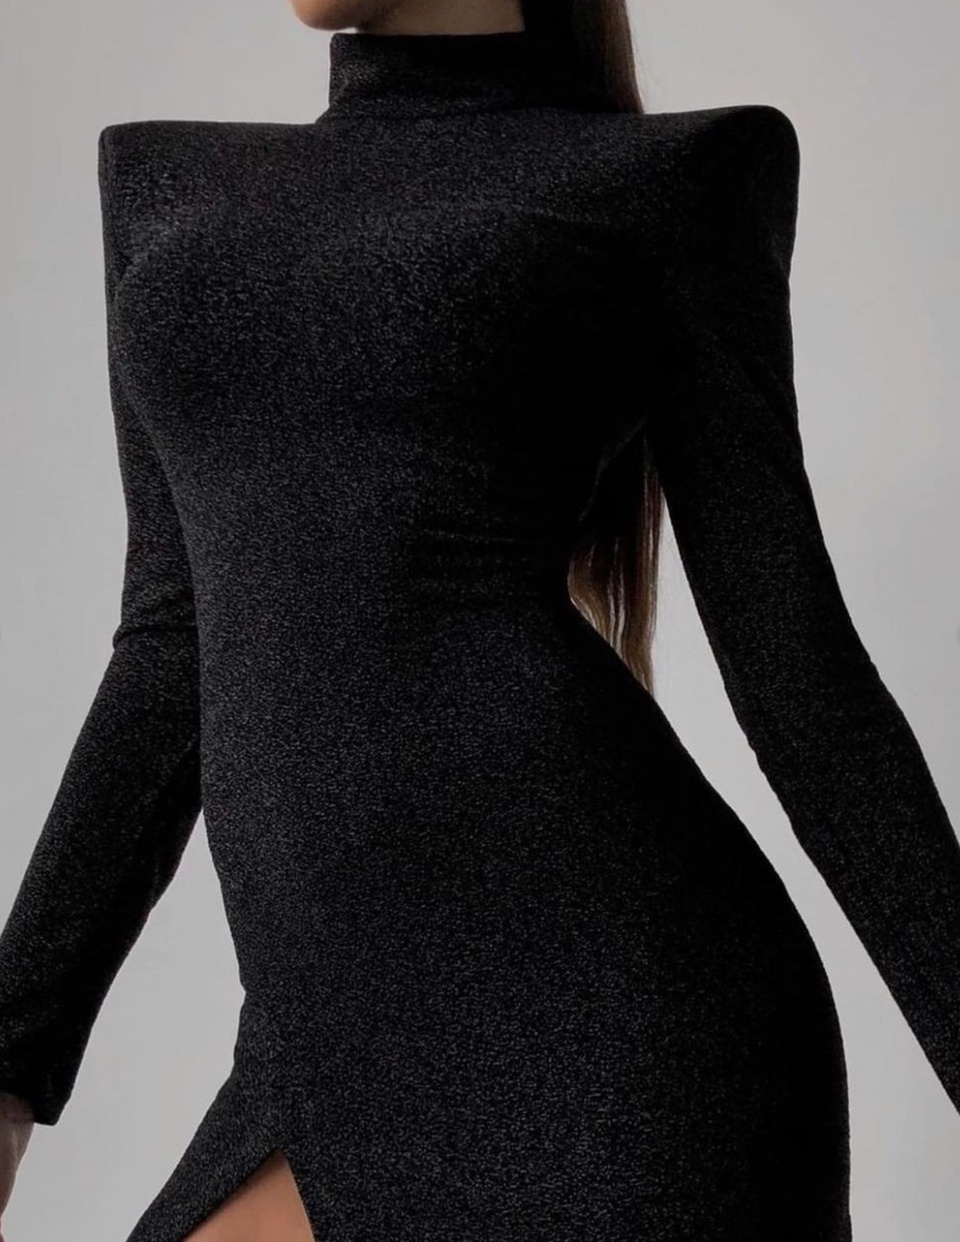 Платье с плечиками в ткани с люрексом - 7 100 ₽, заказать онлайн.